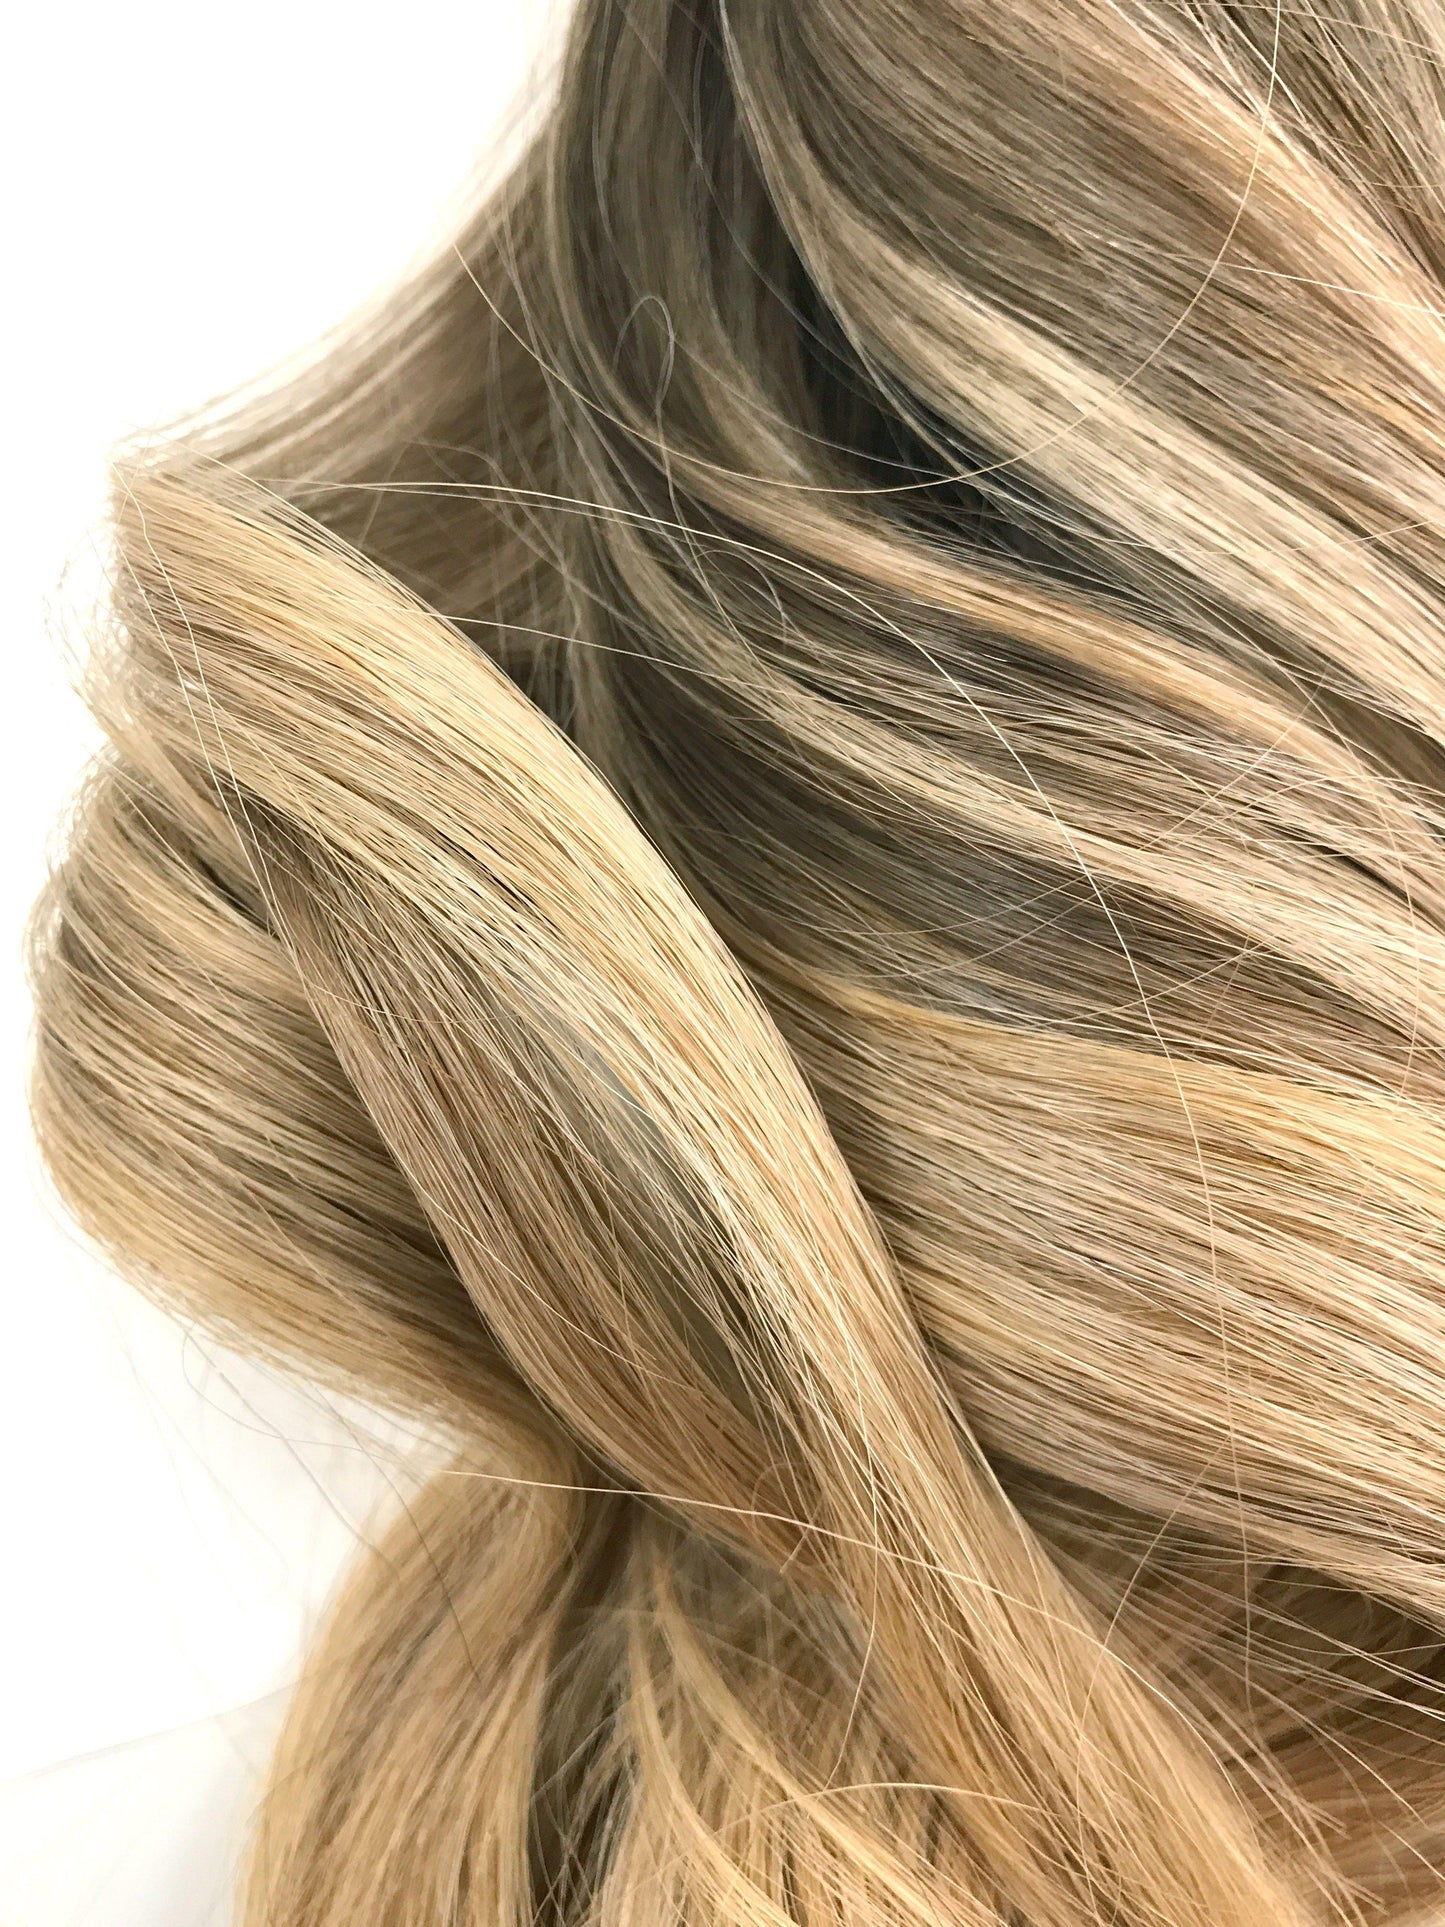 Extensions de cheveux ombrés à balayage européen - cheveux vierges et beauté, les meilleures extensions de cheveux, de vrais cheveux humains vierges.